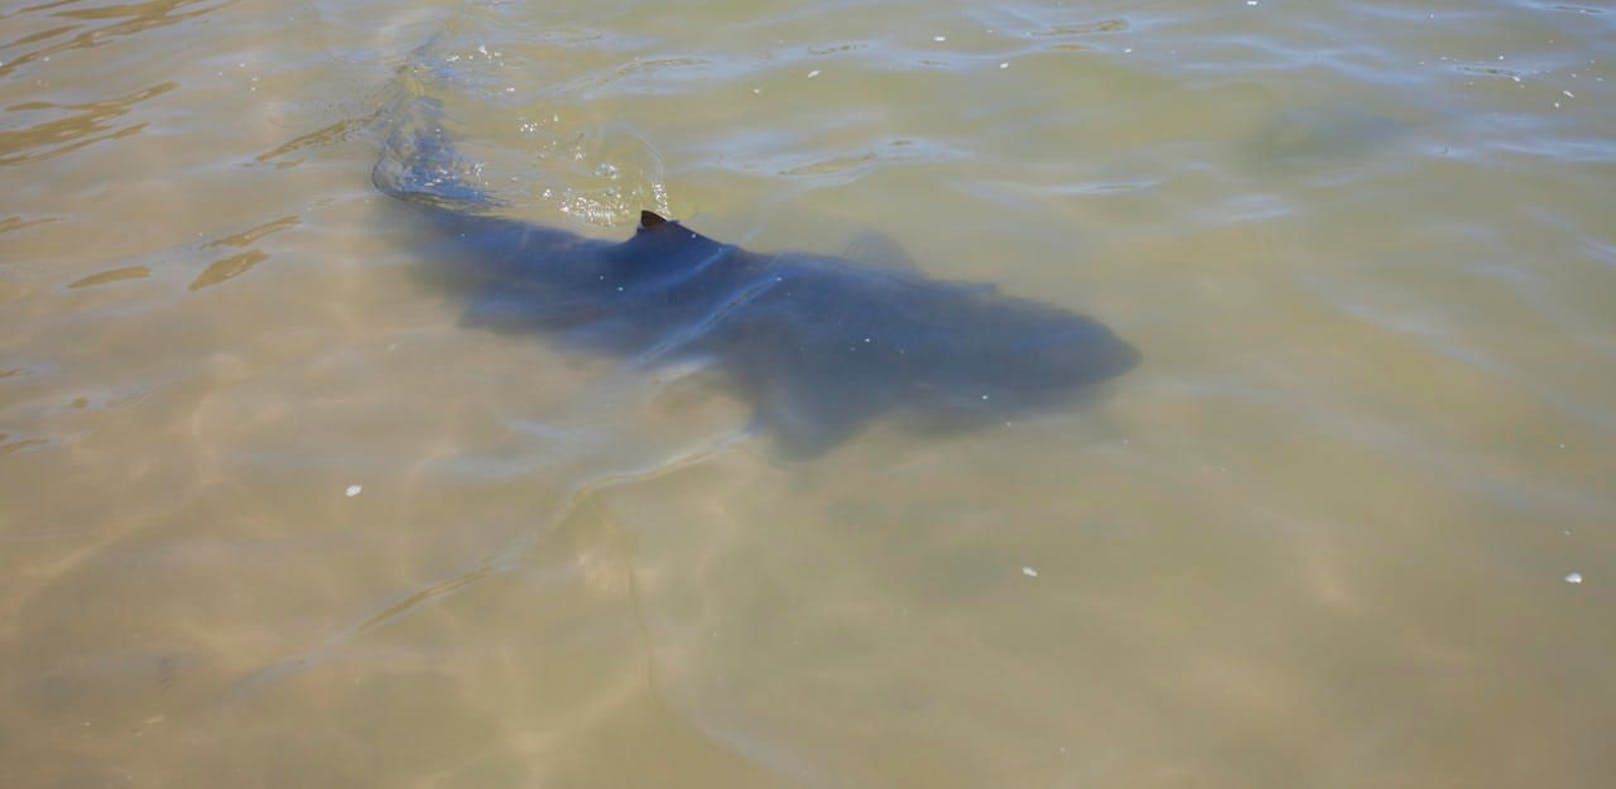 Ein Tourist wurde von dem Hai am Unterarm verletzt - Symbolfoto